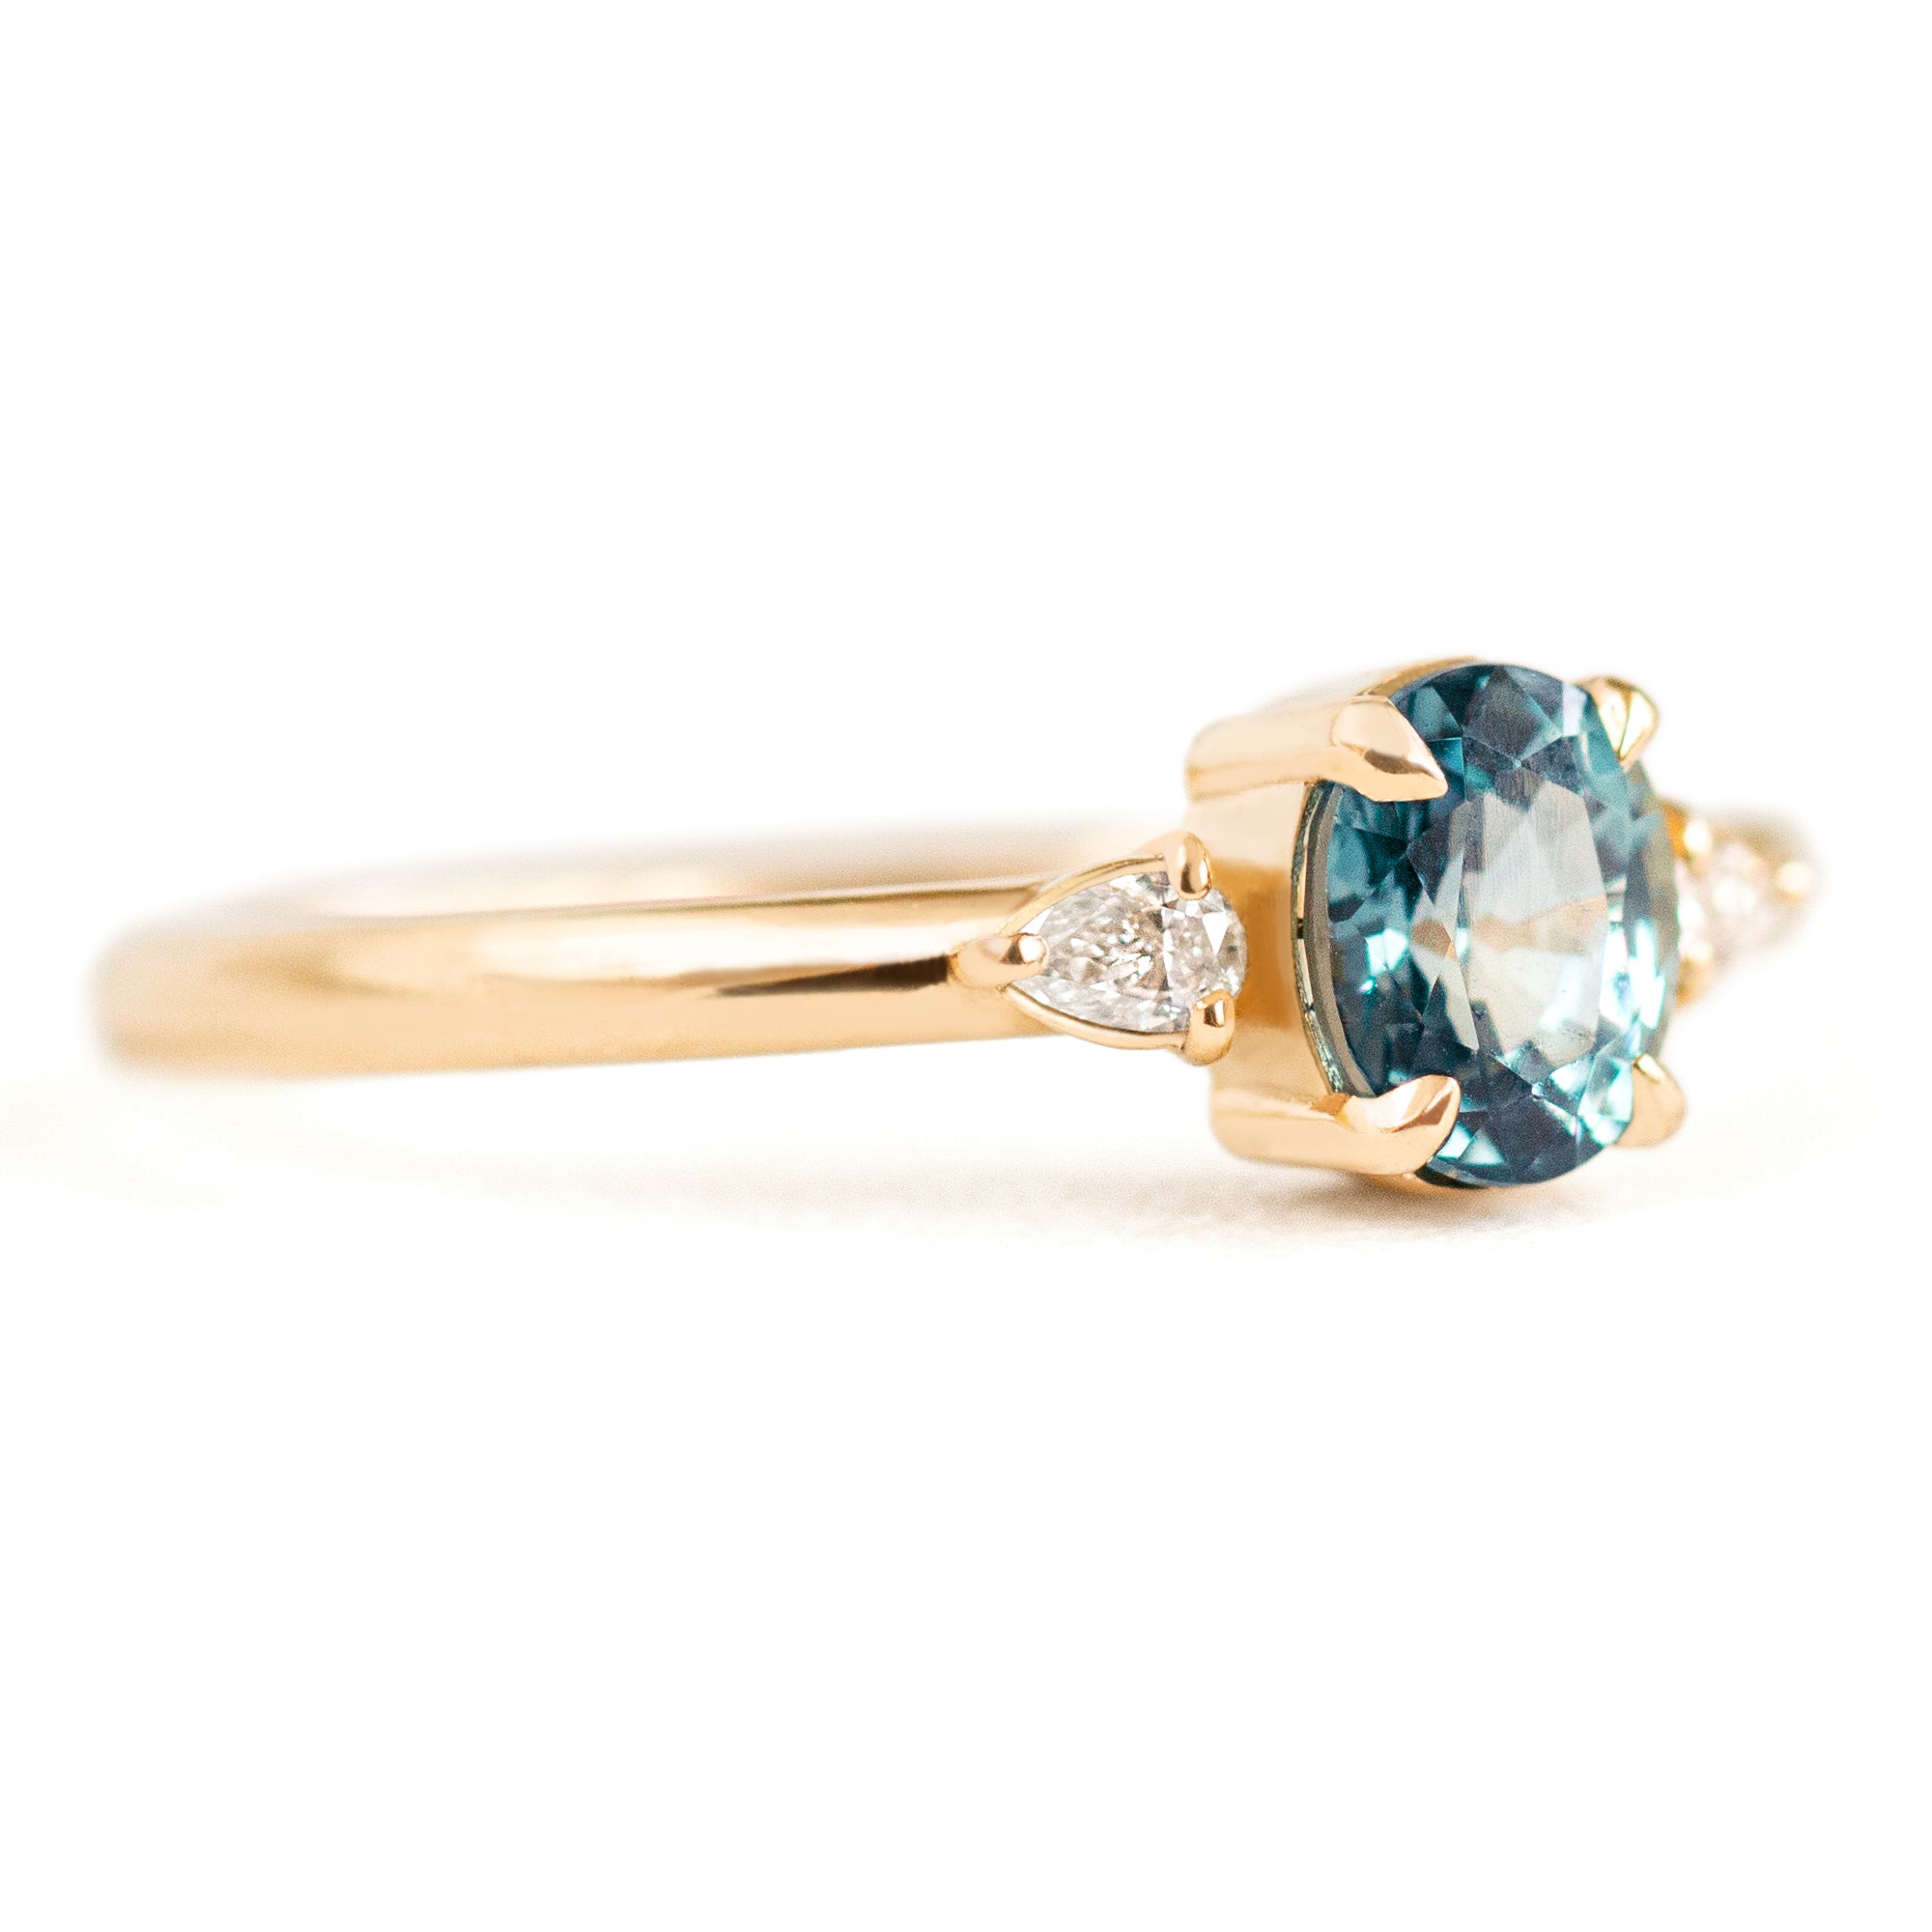 Jamie Park Jewelry - 1.05 ct. Montana Sapphire Pear Cut Diamond Ring